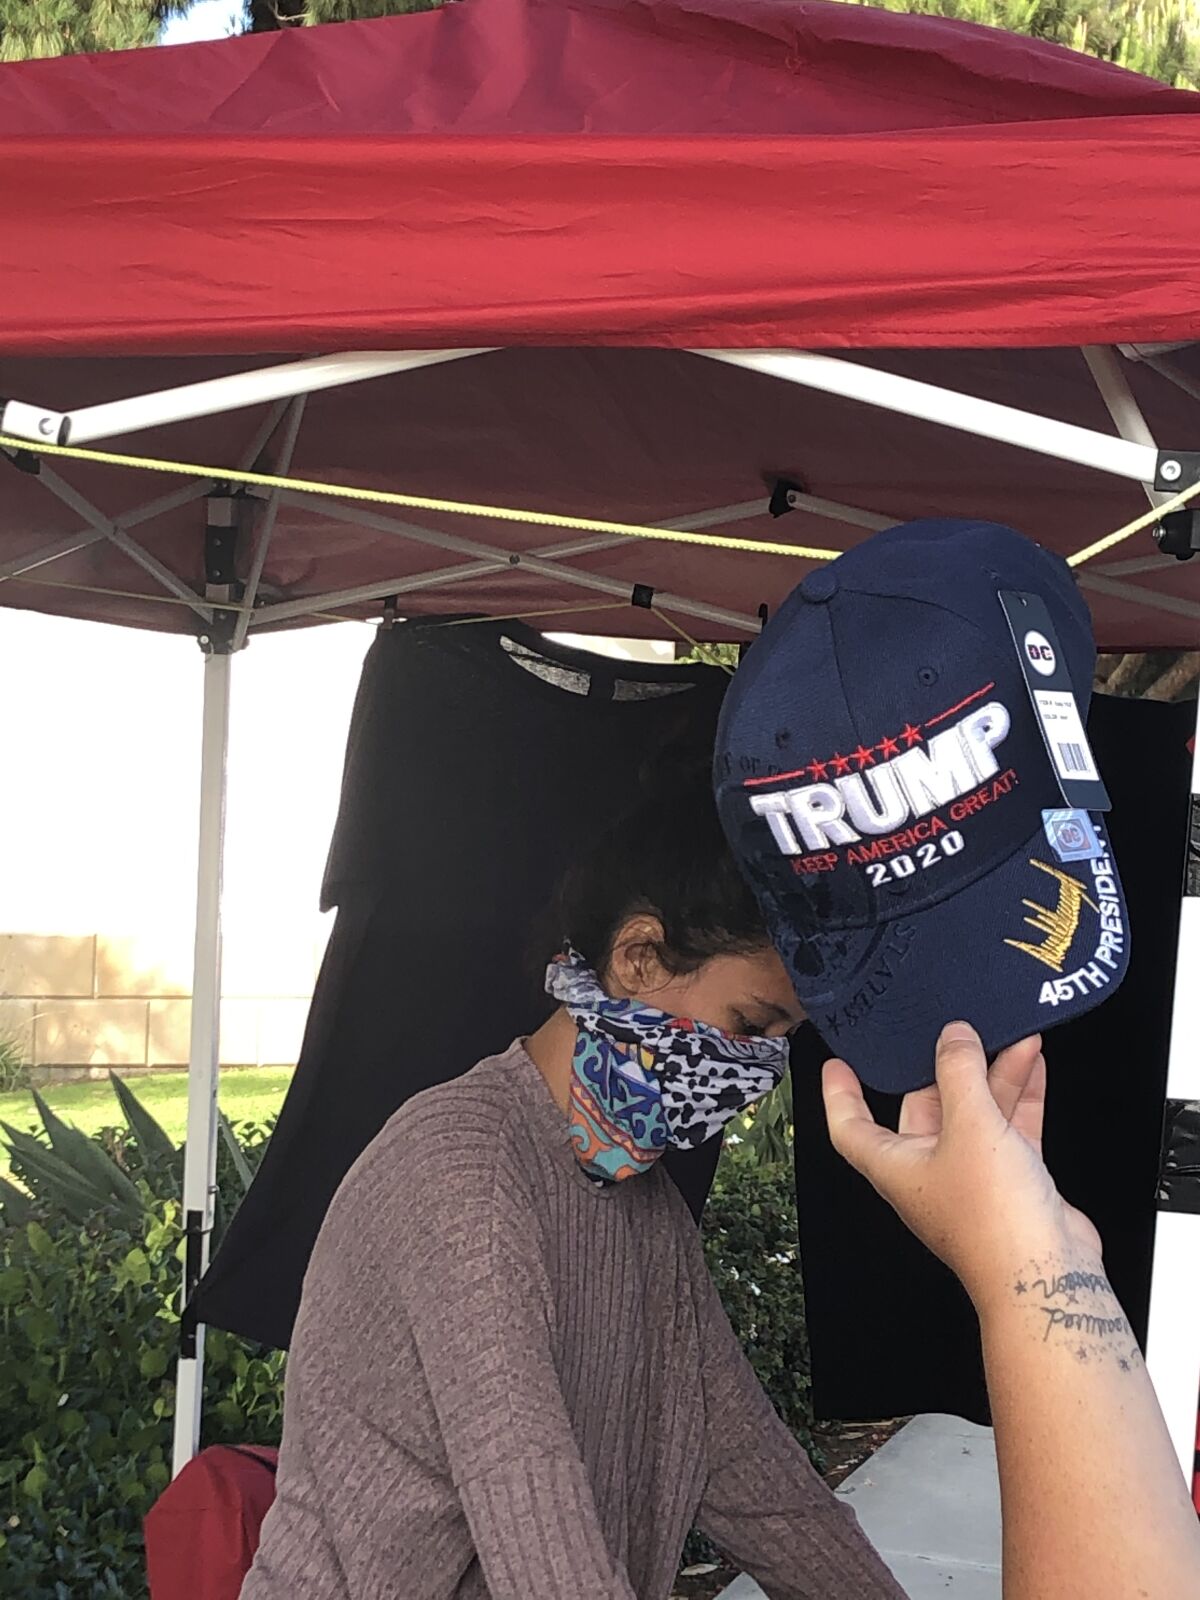 A Trump merchandise vendor seen at Torrey Pines Road and La Jolla Shores Drive in June.